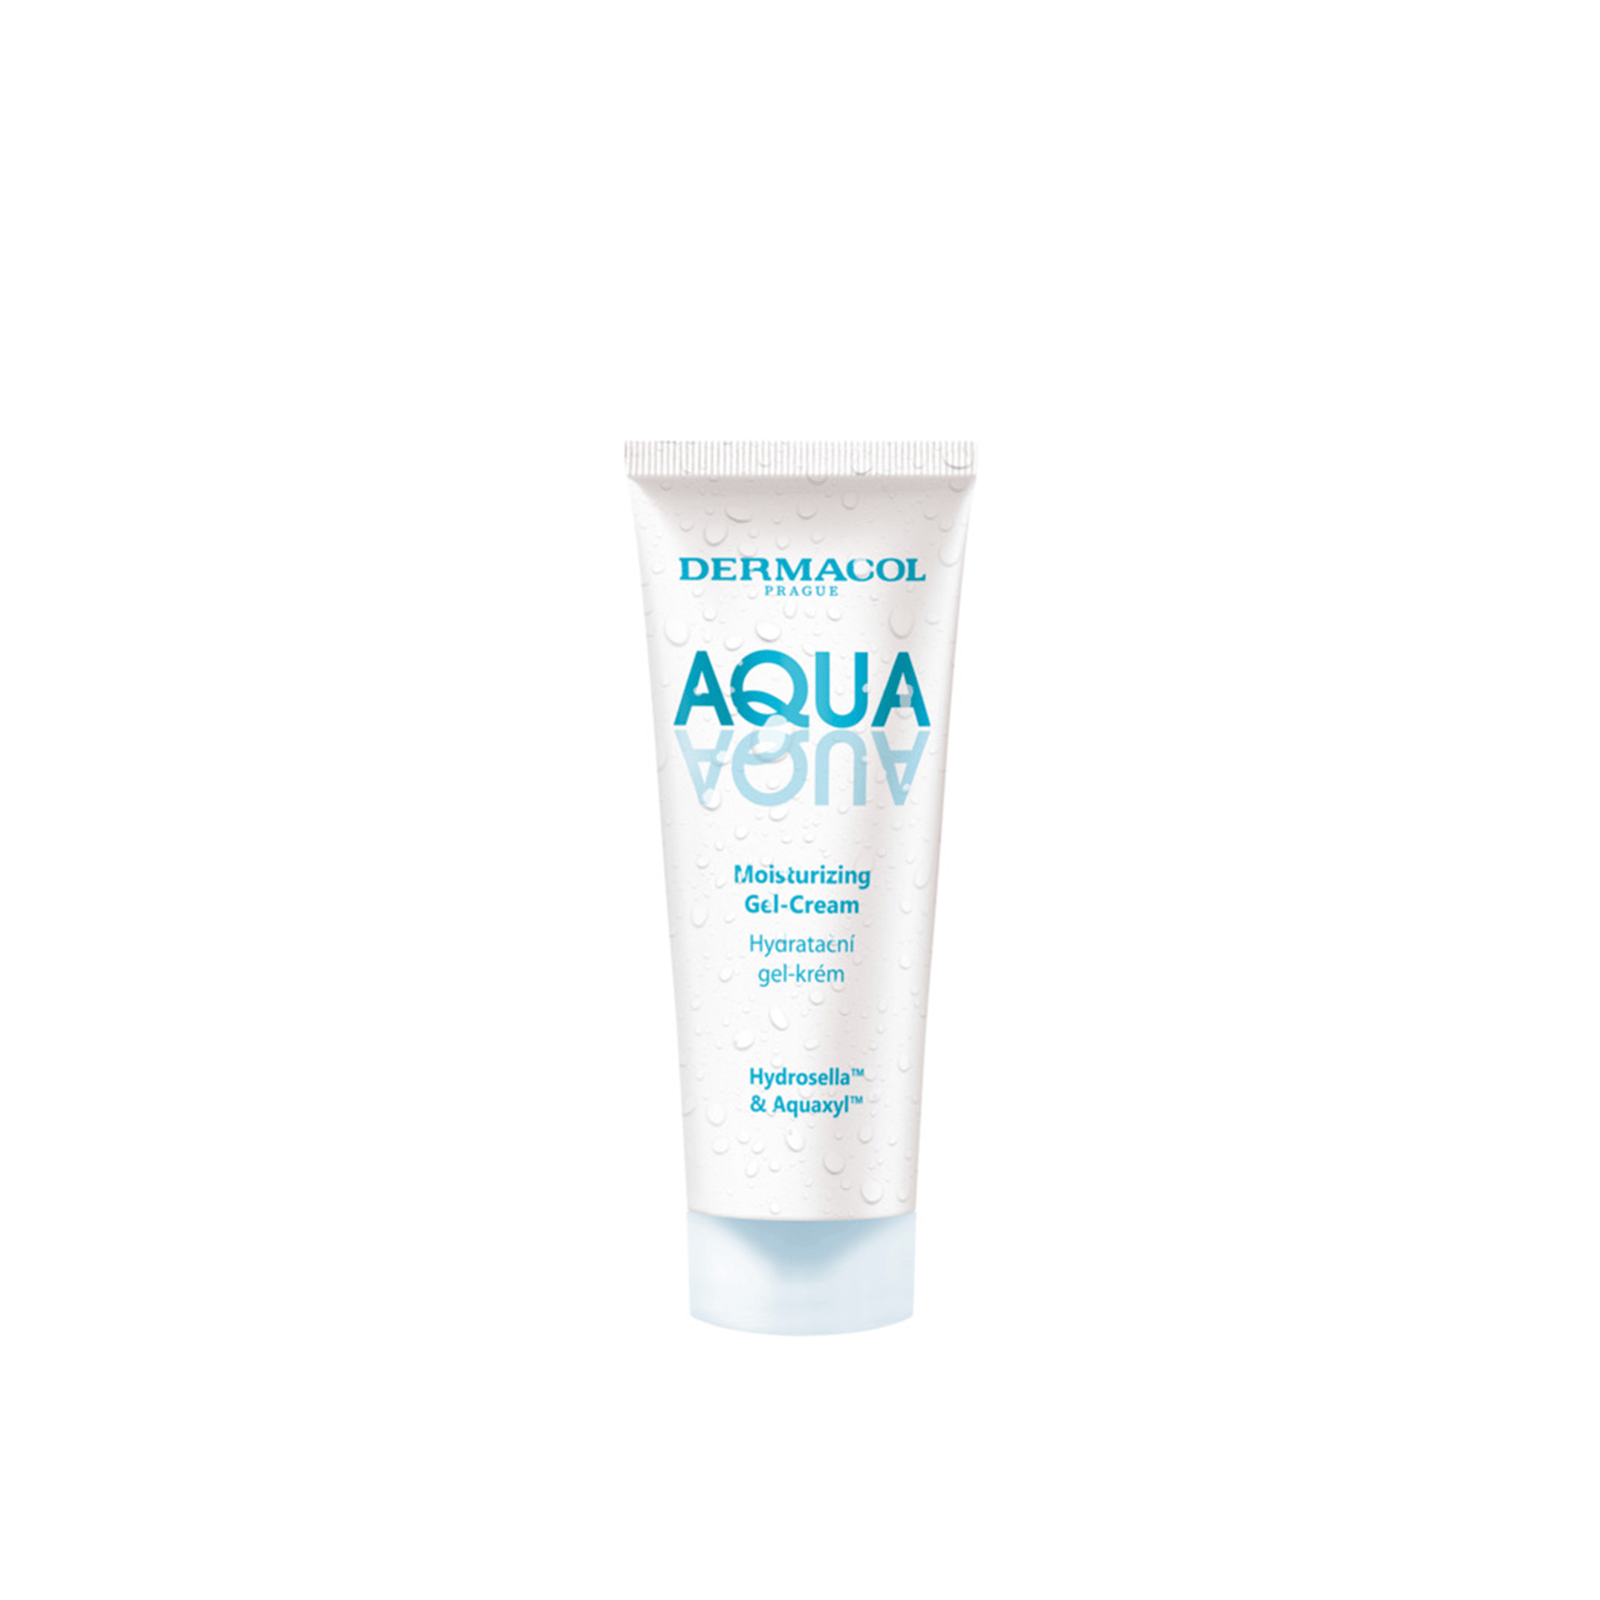 Dermacol Aqua Aqua Moisturizing Gel-Cream 50ml (1.69 fl oz)